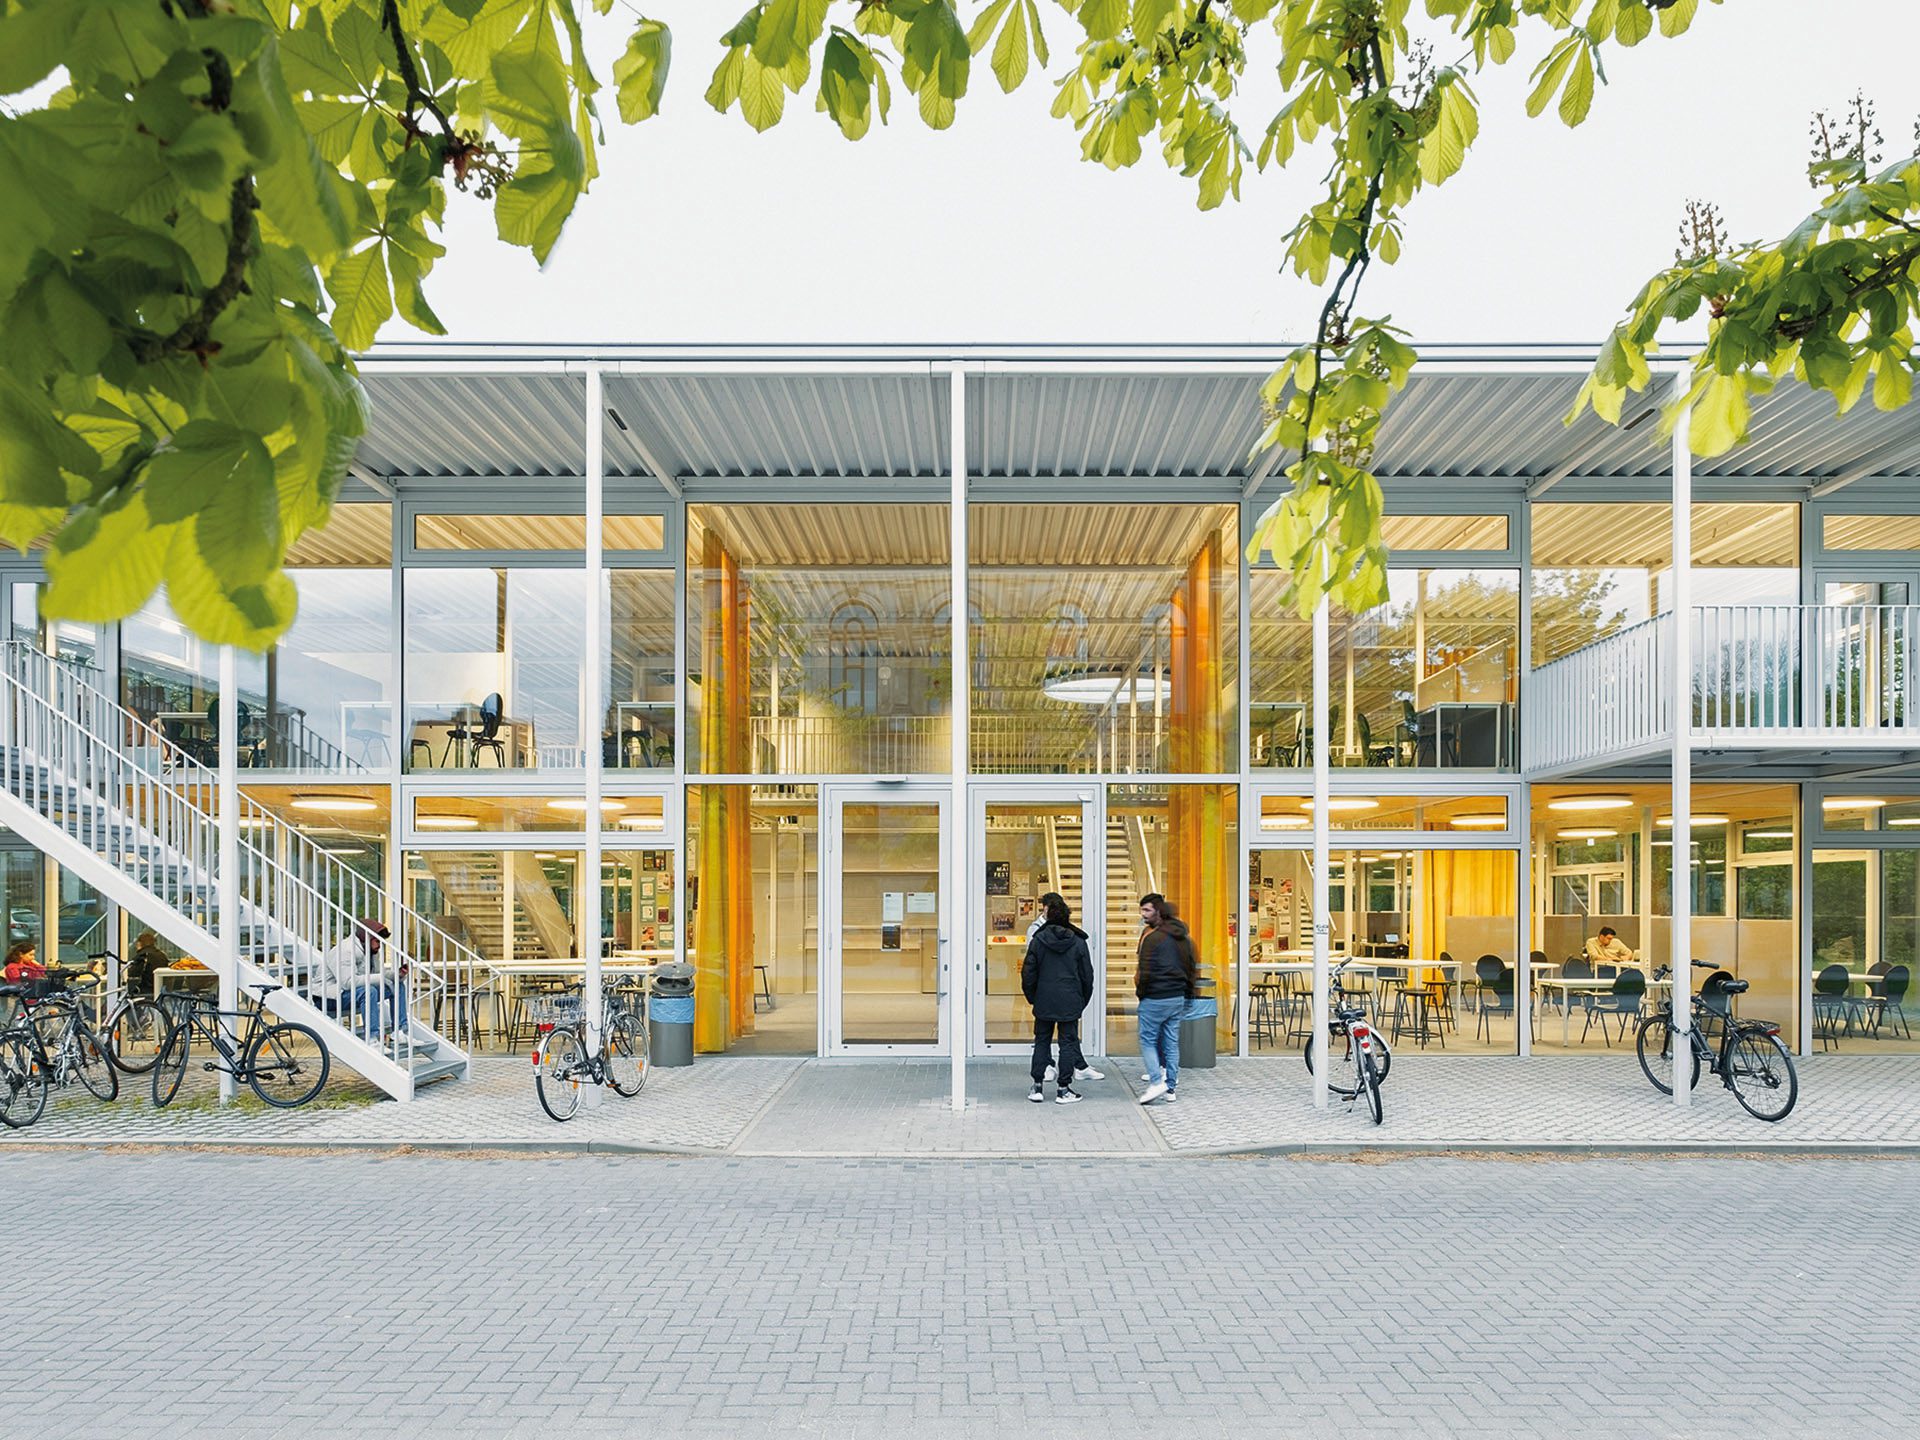 Eingangsbereich des Studienrendenhaus der TU Braunschweig (Quelle: Gustav Düsing & Max Hacke, Berlin / Foto: Iwan Baan)